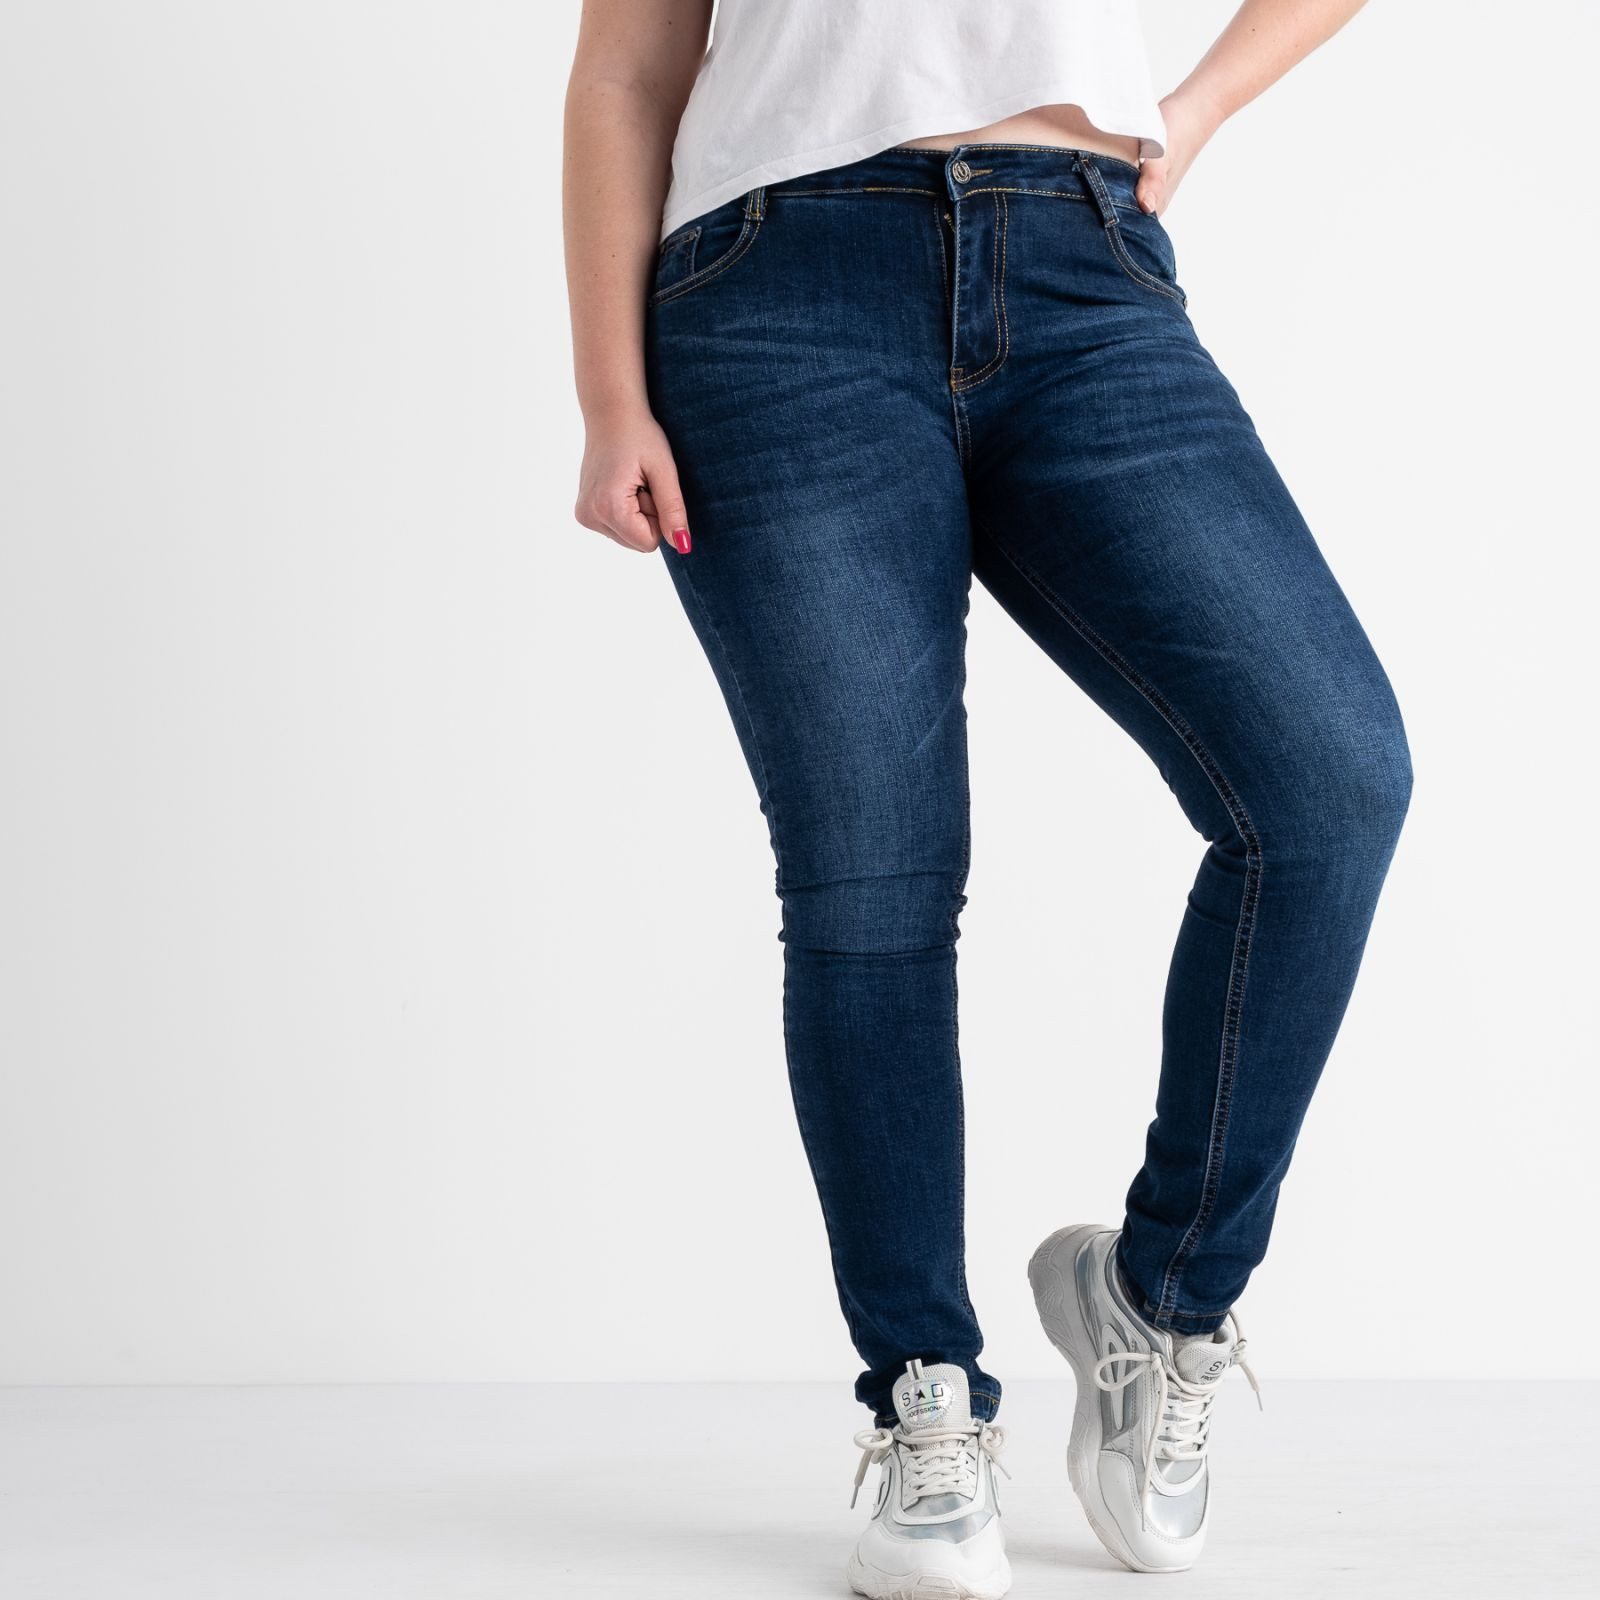 0602 Fashion Jeans джинсы батальные синие стрейчевые ( 6 ед. размеры: 31.32.33.34.36.38)